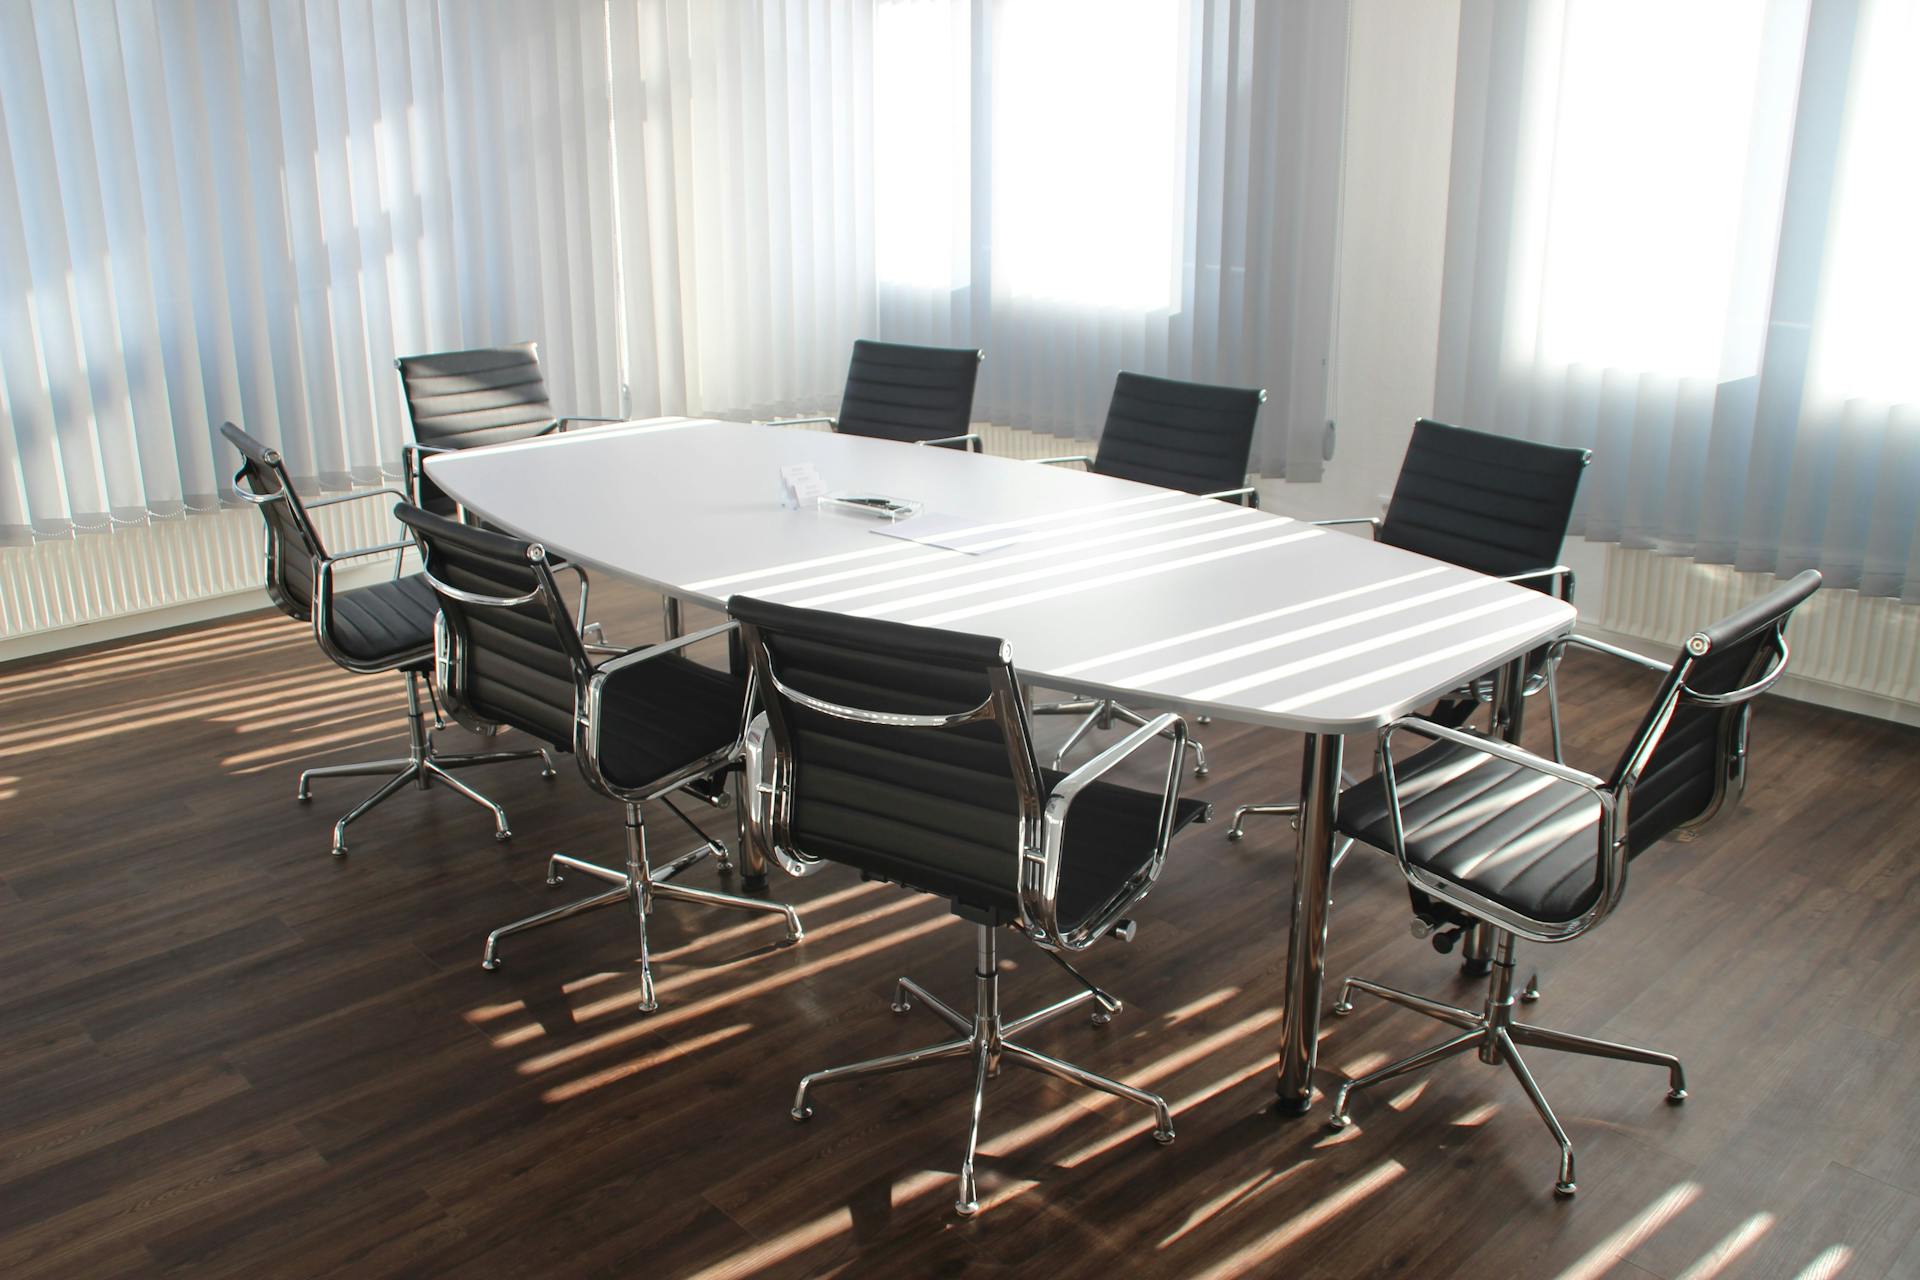 Una sala de reuniones en una oficina | Fuente: Pexels